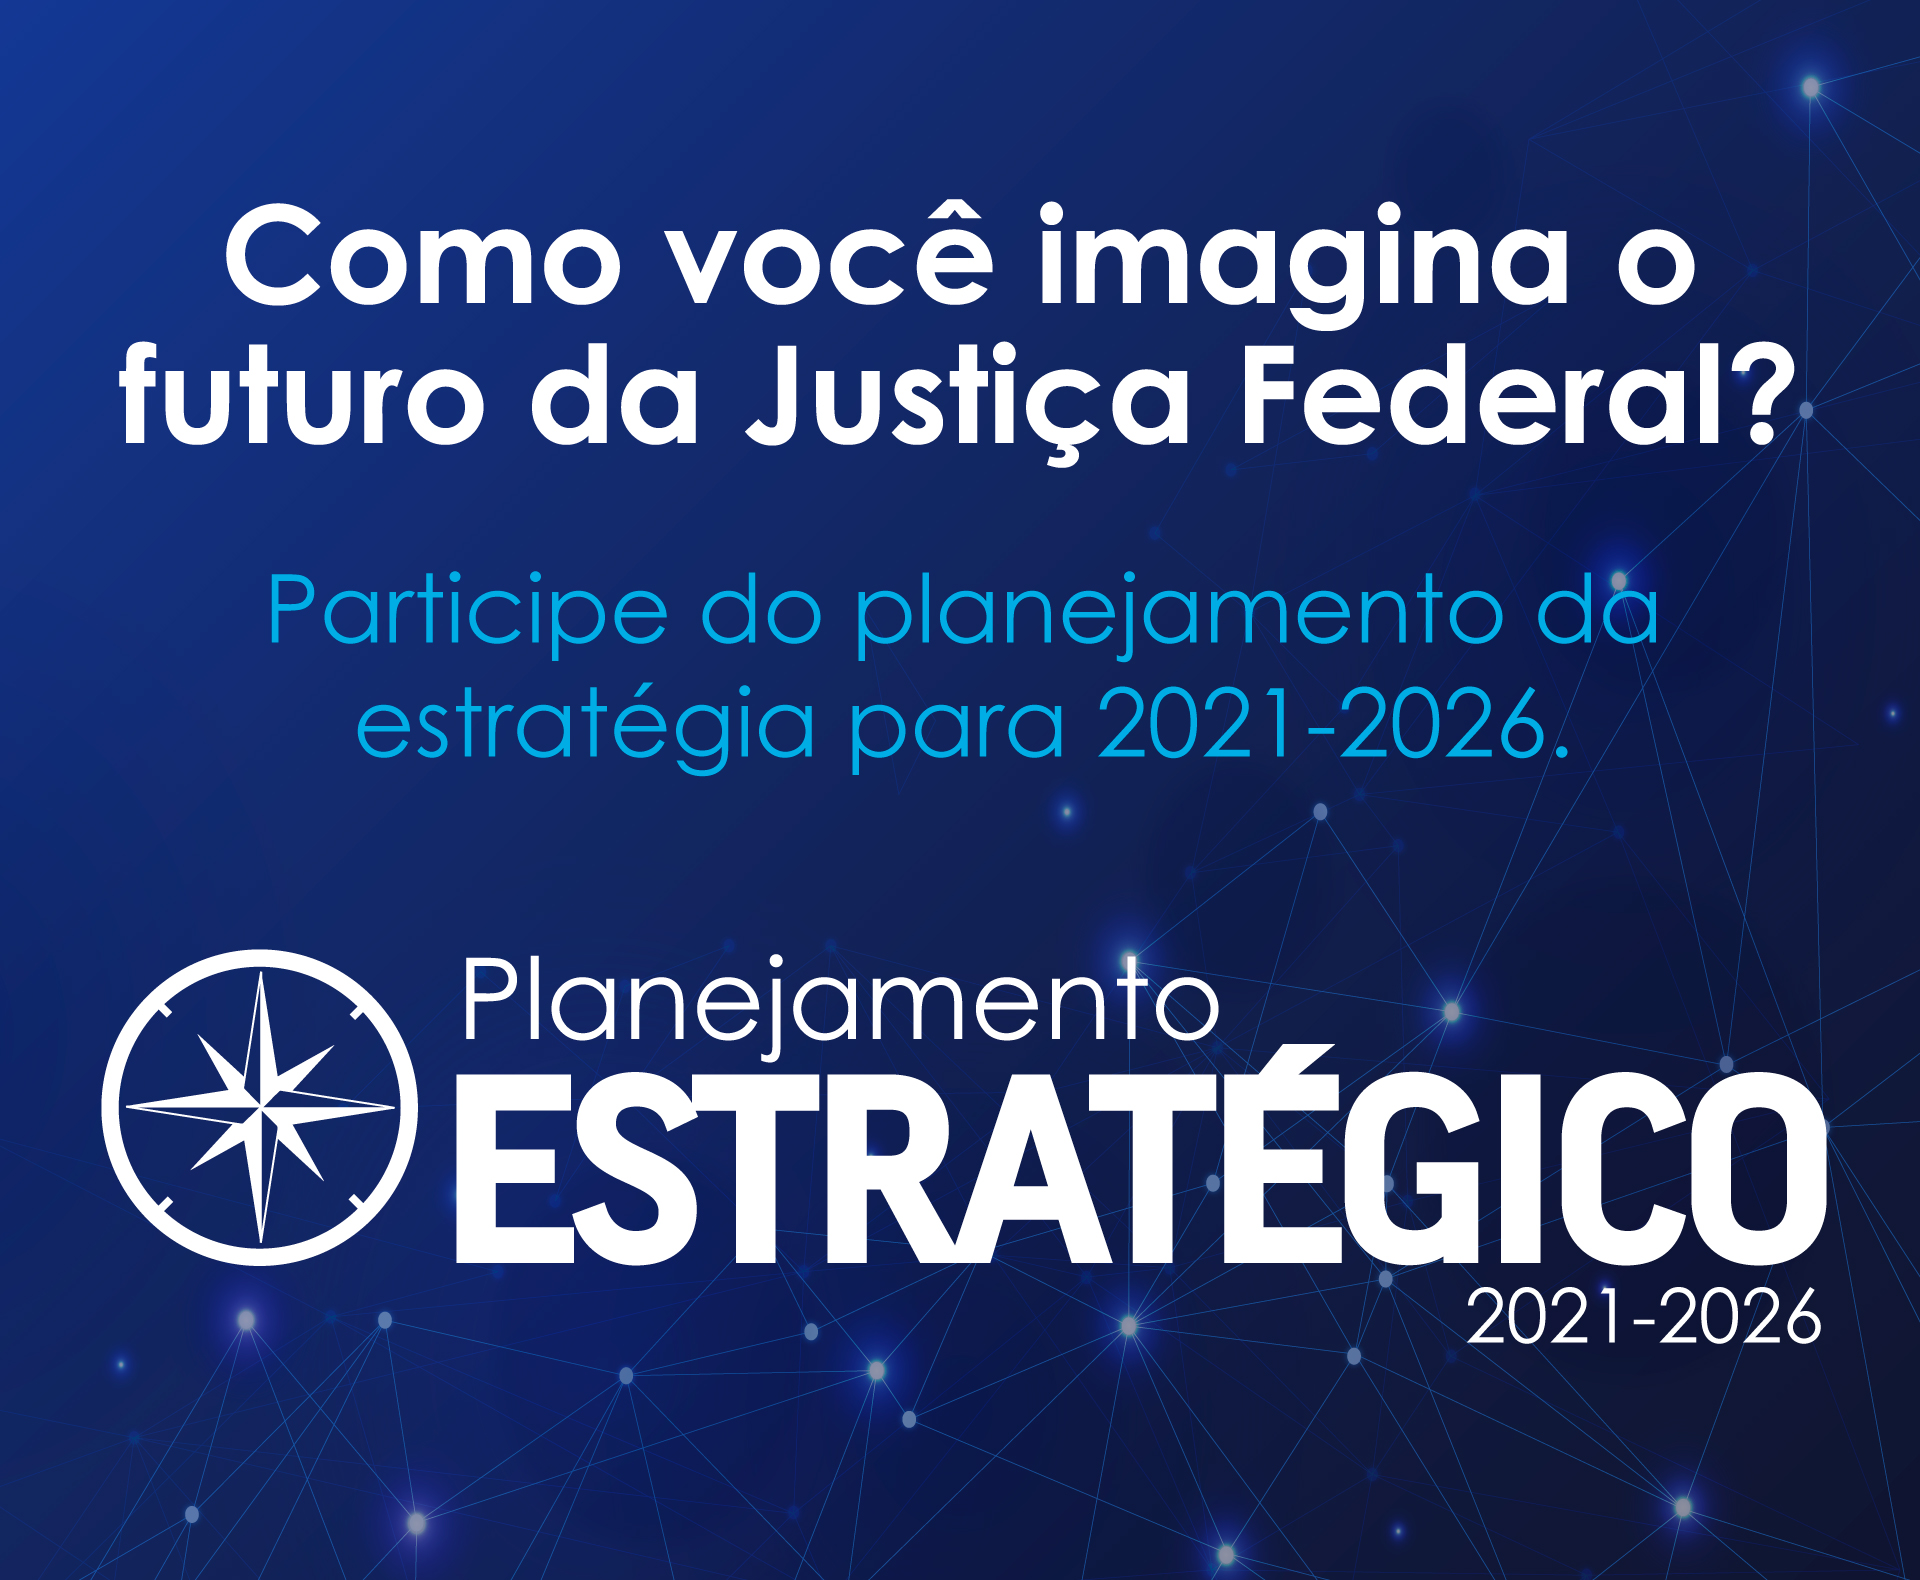 INSTITUCIONAL: Participe da pesquisa sobre planejamento da estratégia da Justiça Federal 2021-2026